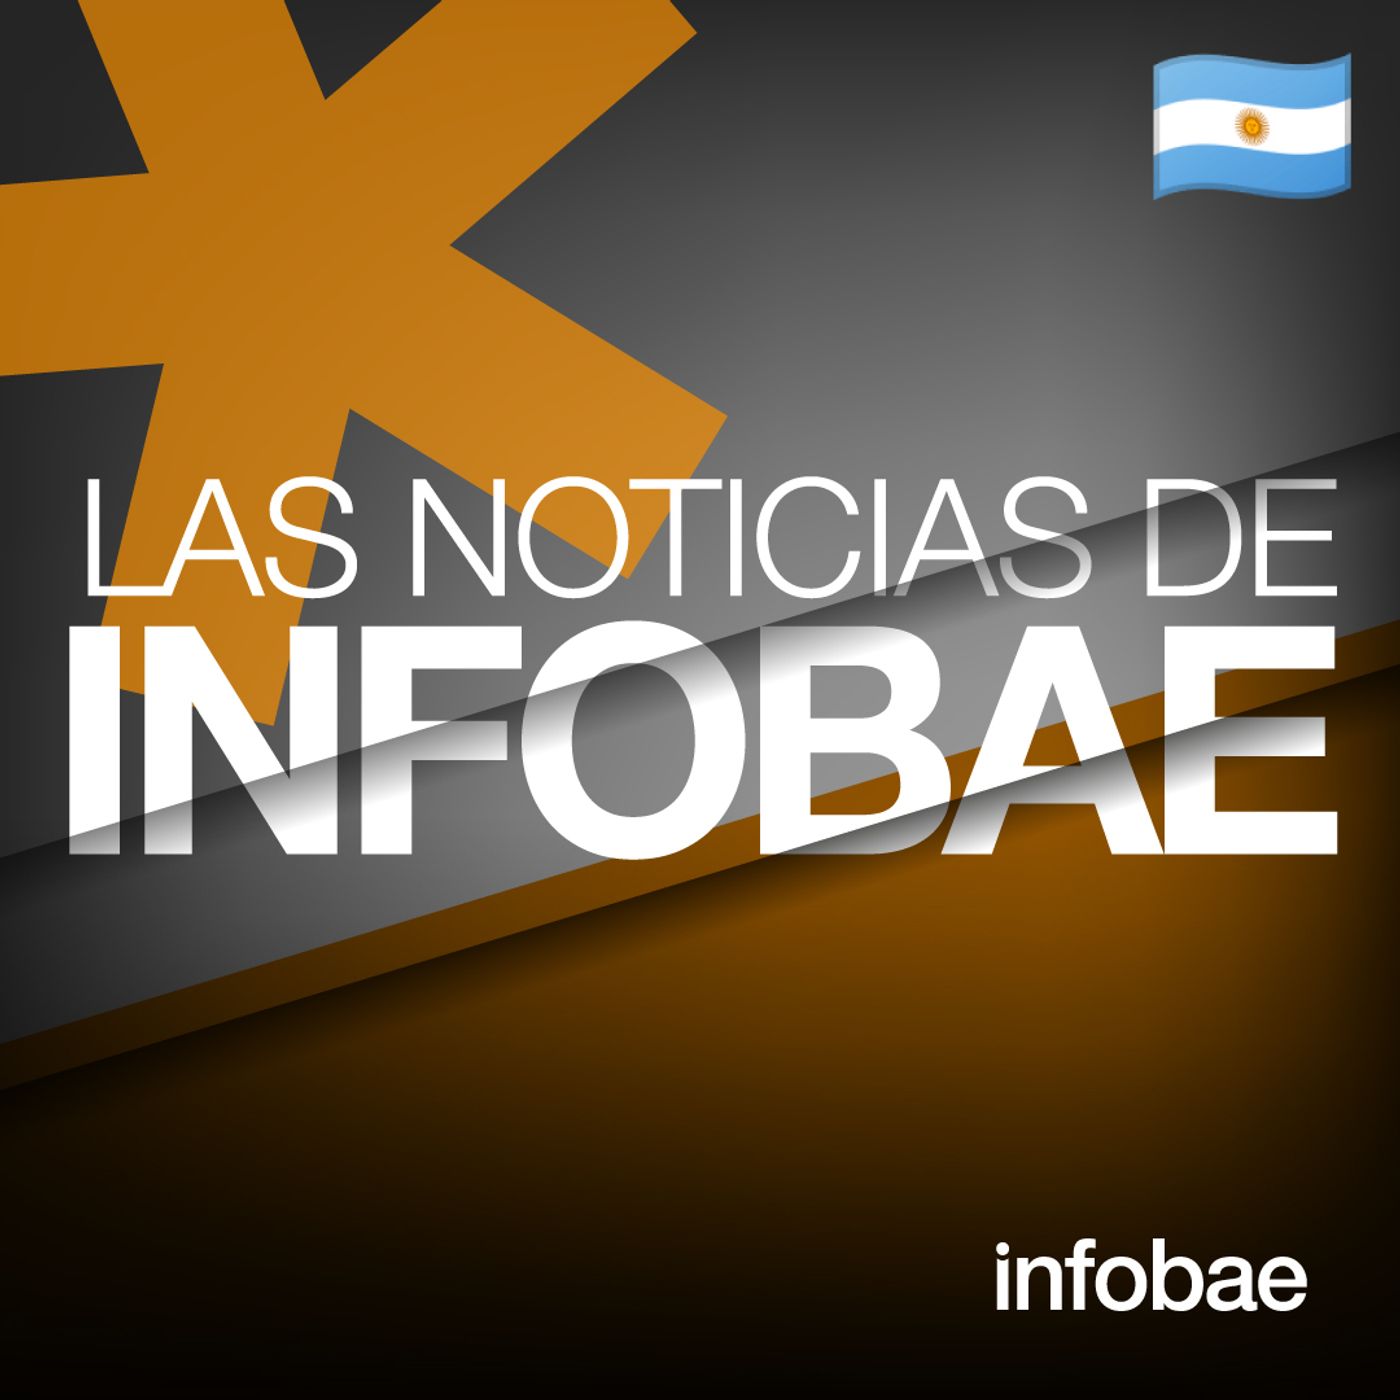 703: Las Noticias de Infobae (AR)